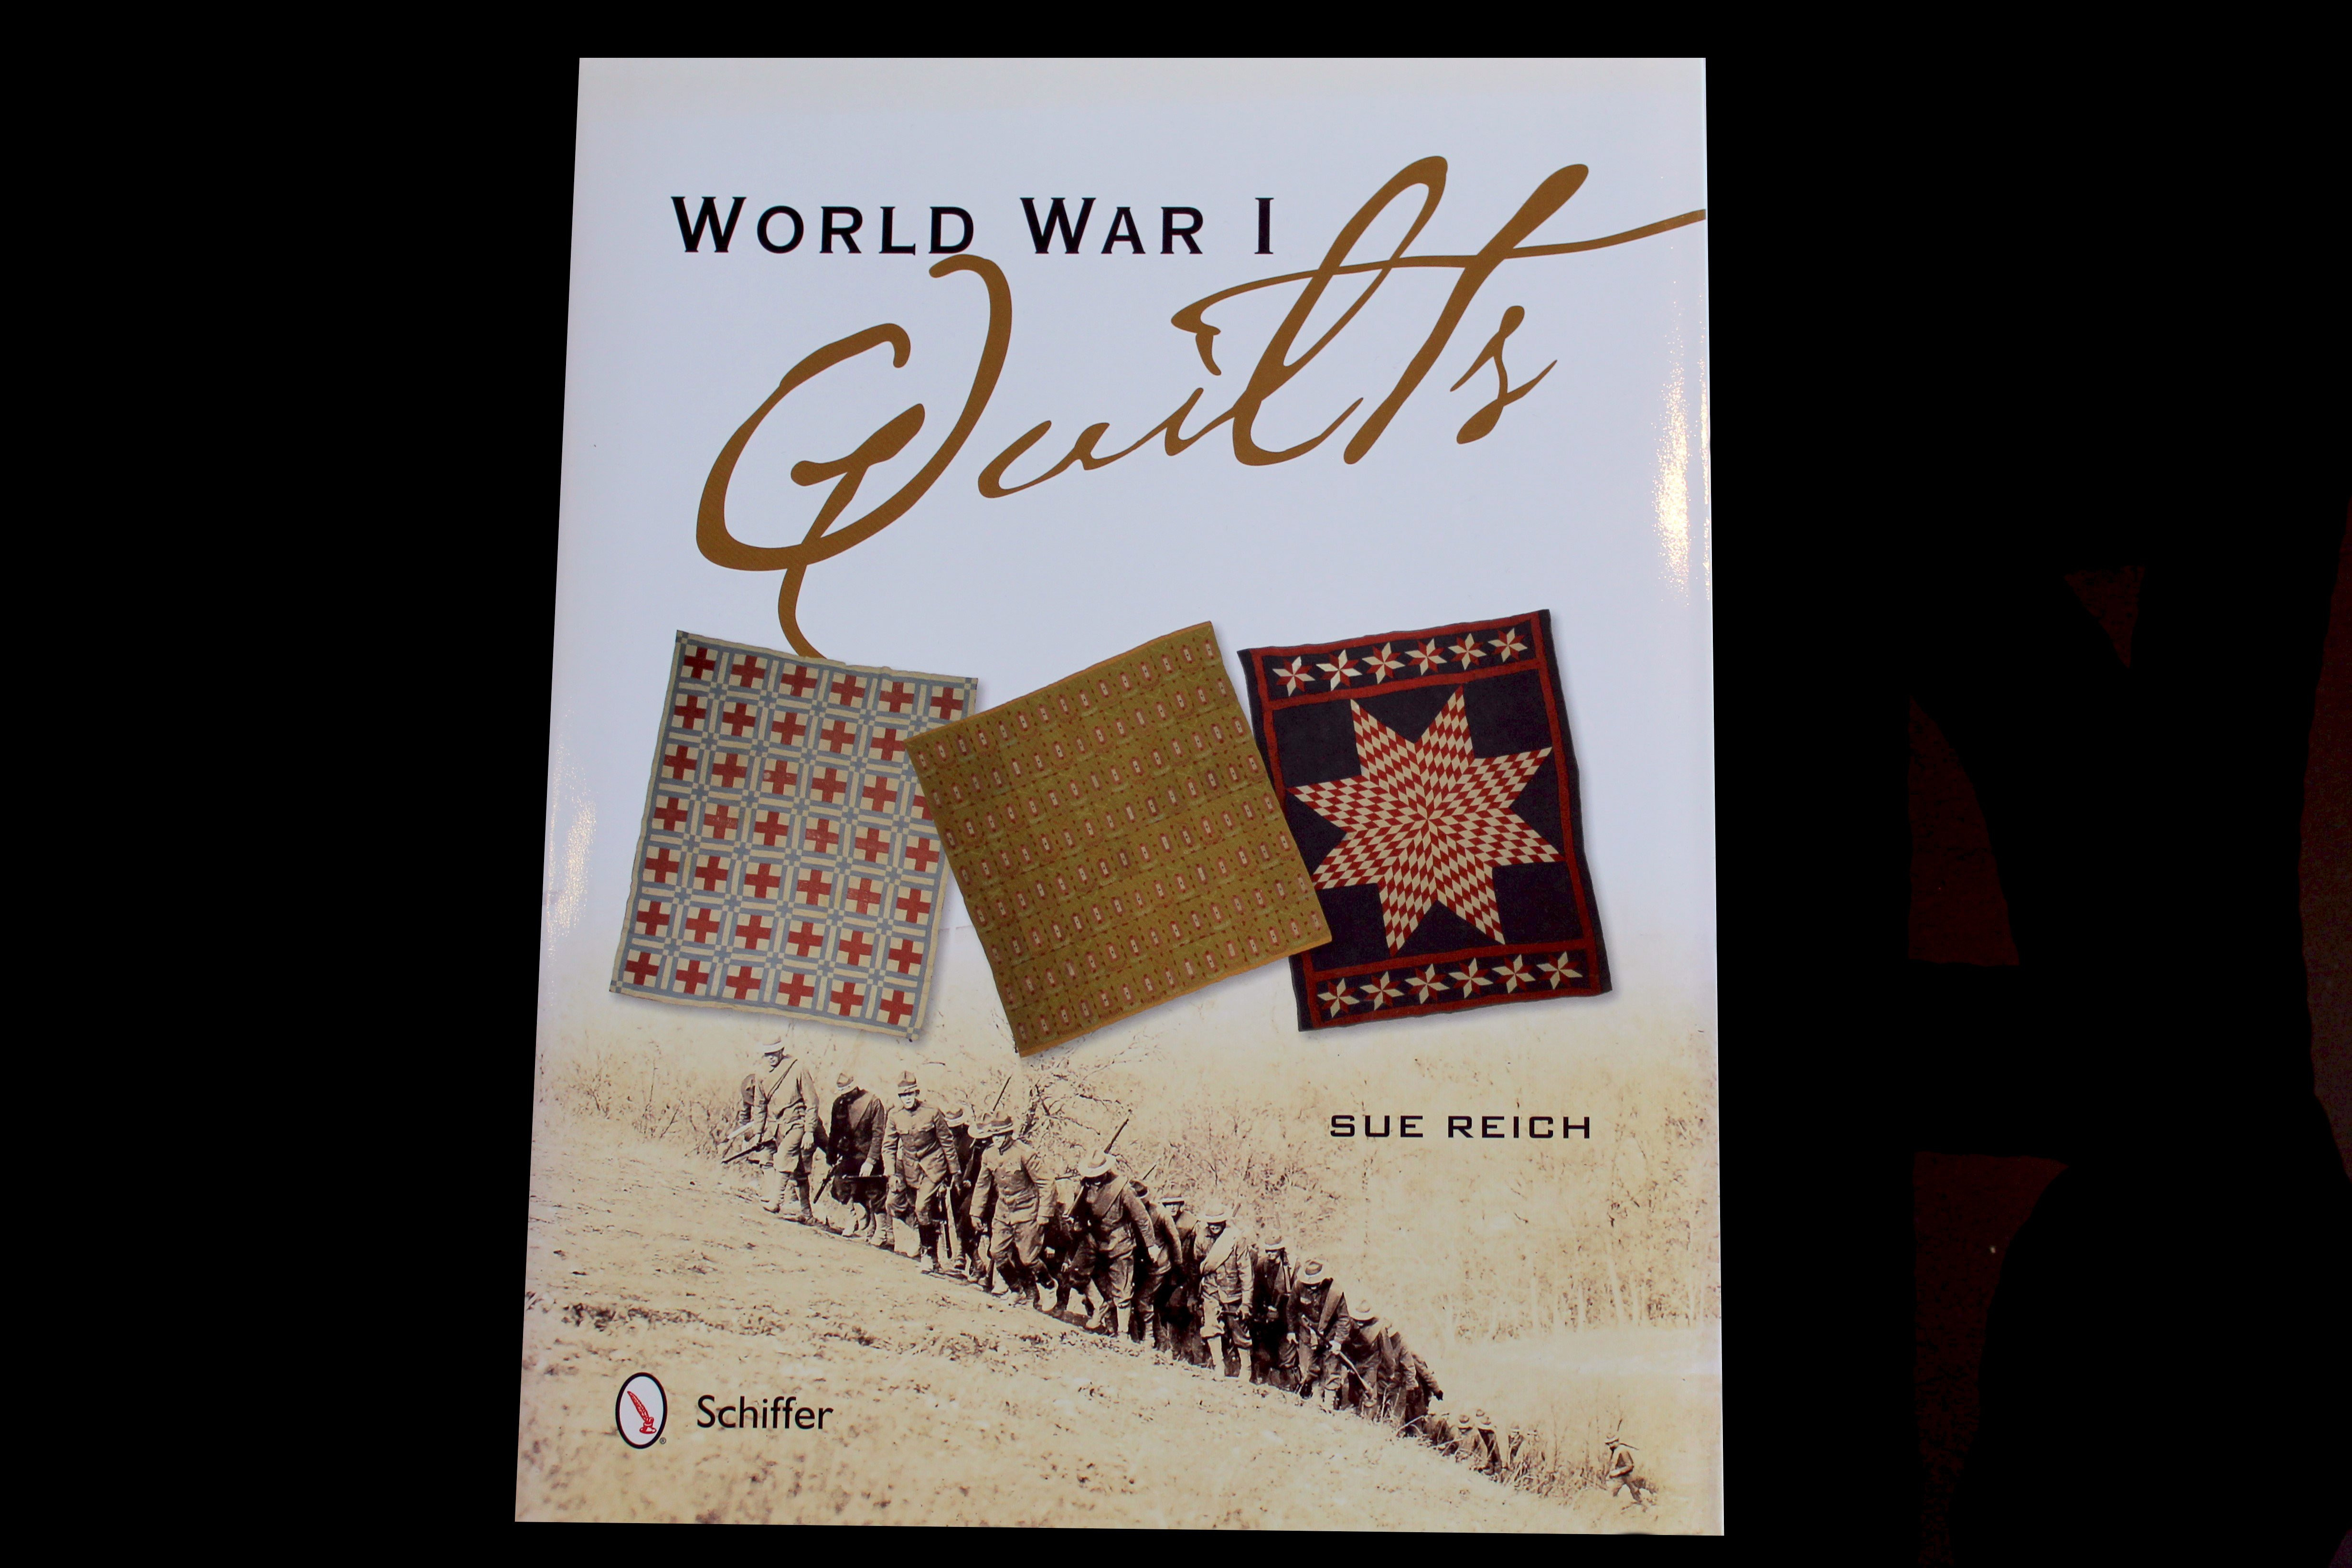 World War I Quilts